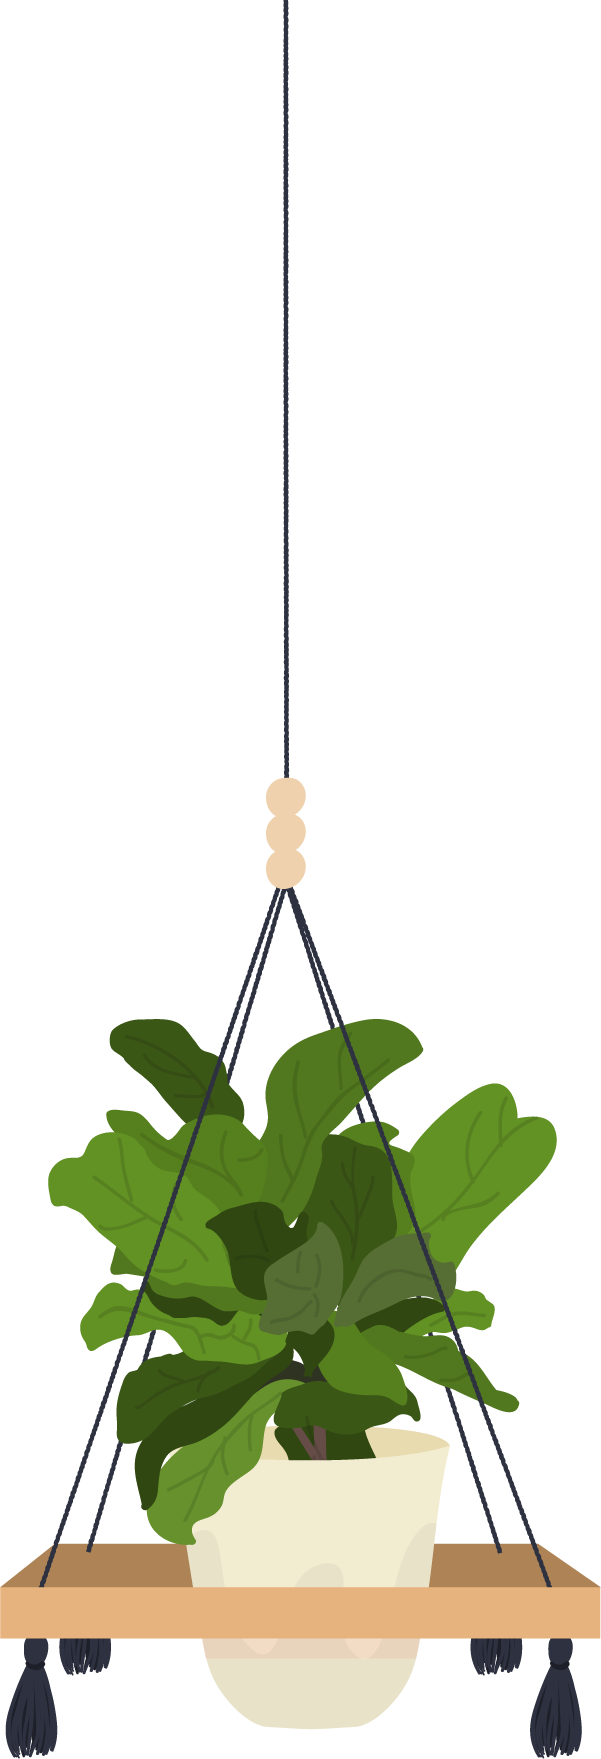 סנסיווריה - עציץ קטן